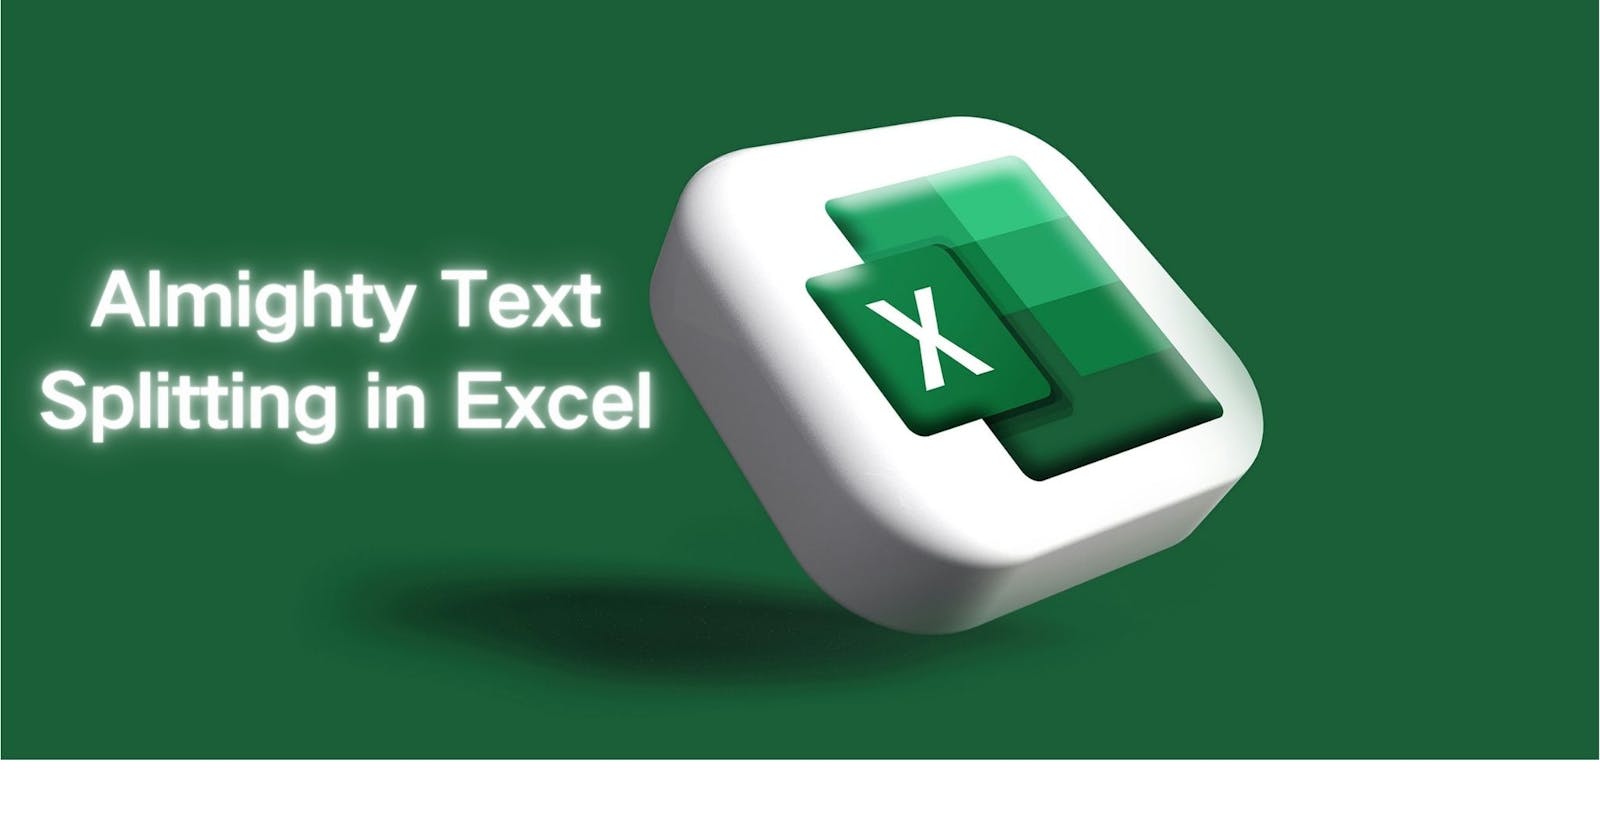 SPL XLL Practice: Almighty Text Splitting in Excel